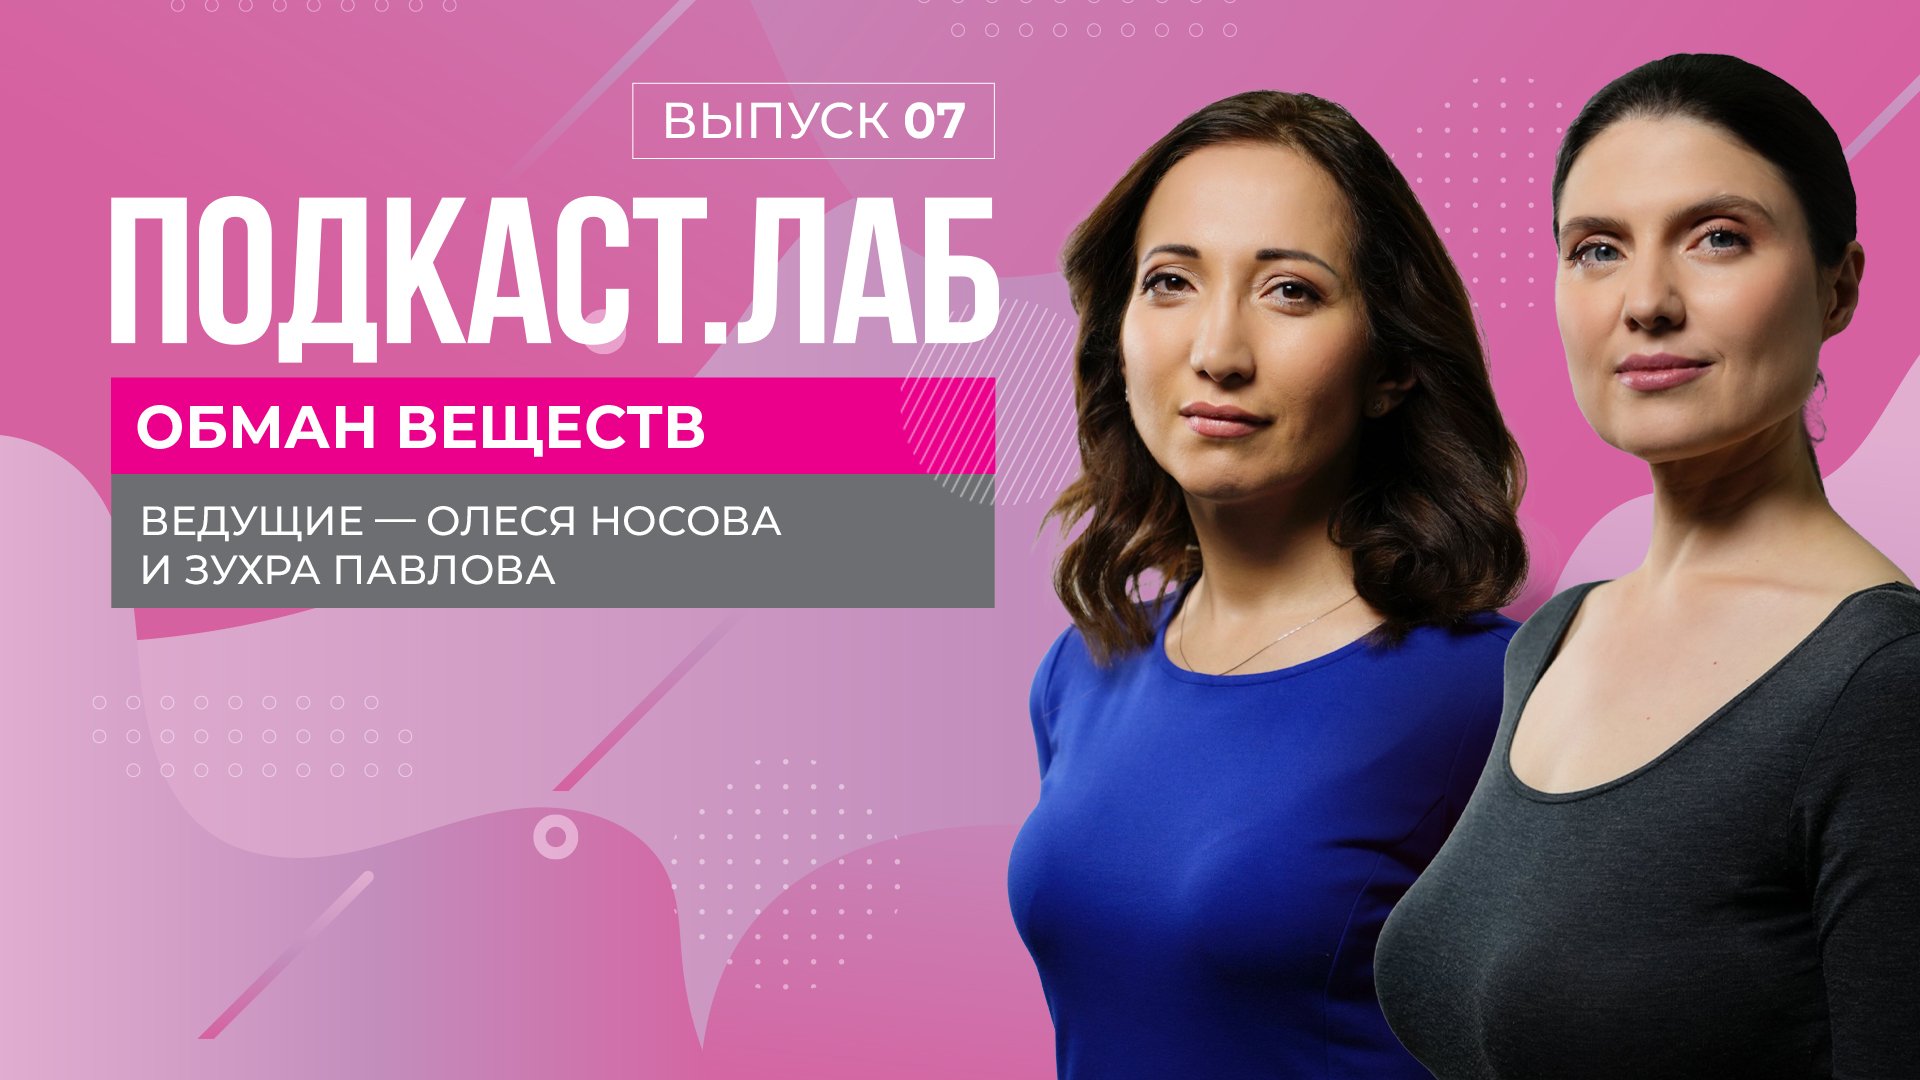 Visit Ukraine - Меган Фокс обозвала украинок и загремела в скандал: ее обвинили в ксенофобии